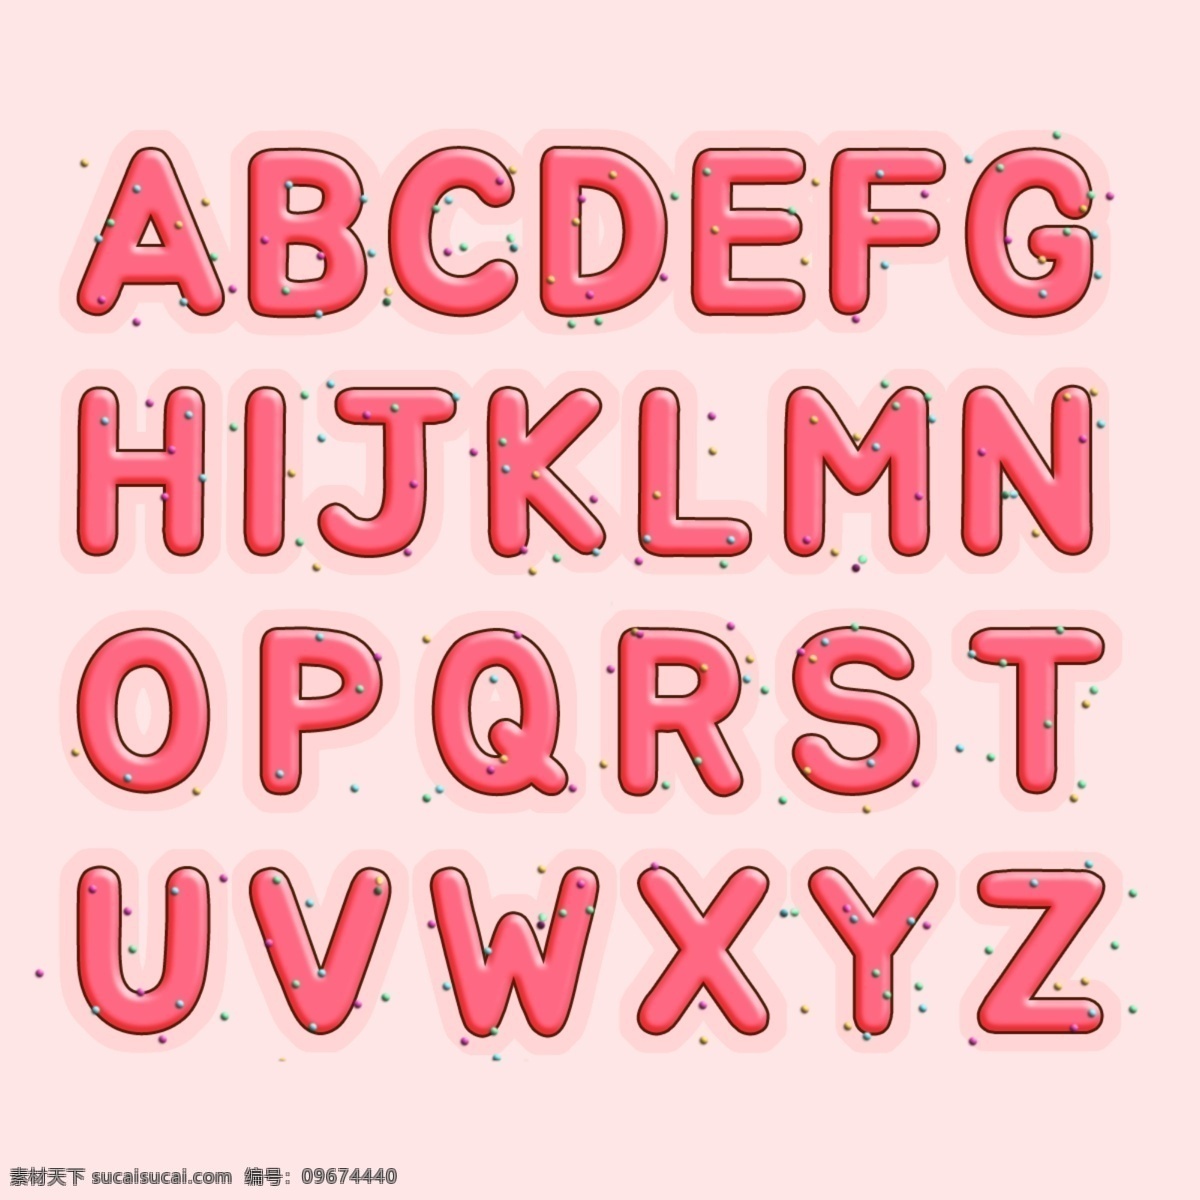 糖果字母 卡通字母 手绘字母 立体字母 3d字母 儿童字母 食物字母 食品字母 童趣字母 图层样式 卡通图层样式 创意字母 艺术字母 有趣字母 趣味字母 活泼字母 时尚字母 现代字母 数字字母 标志图标 其他图标